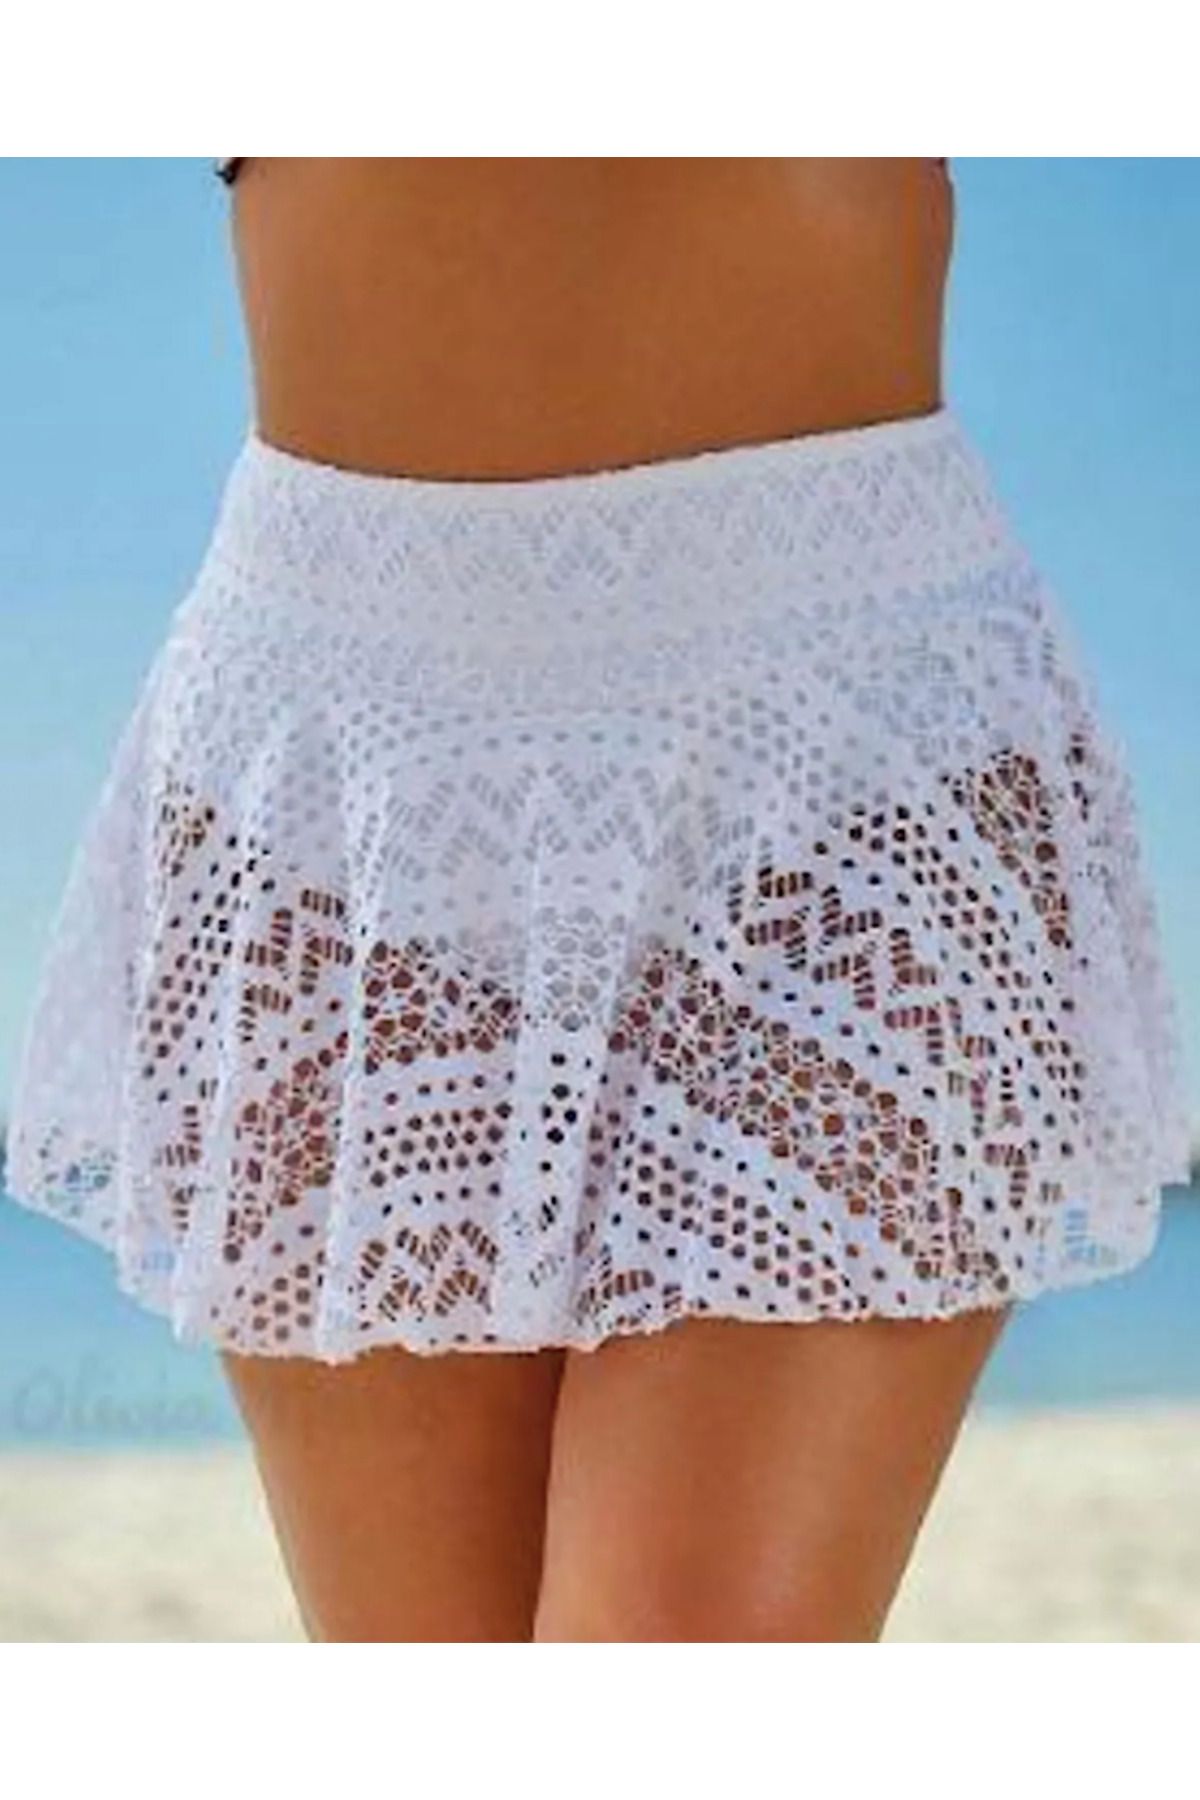 my cherie Dantel Beli Oturan Beyaz Mini Etek Kloş Plaj Elbisesi  Plaj Kıyafeti Tek Parça